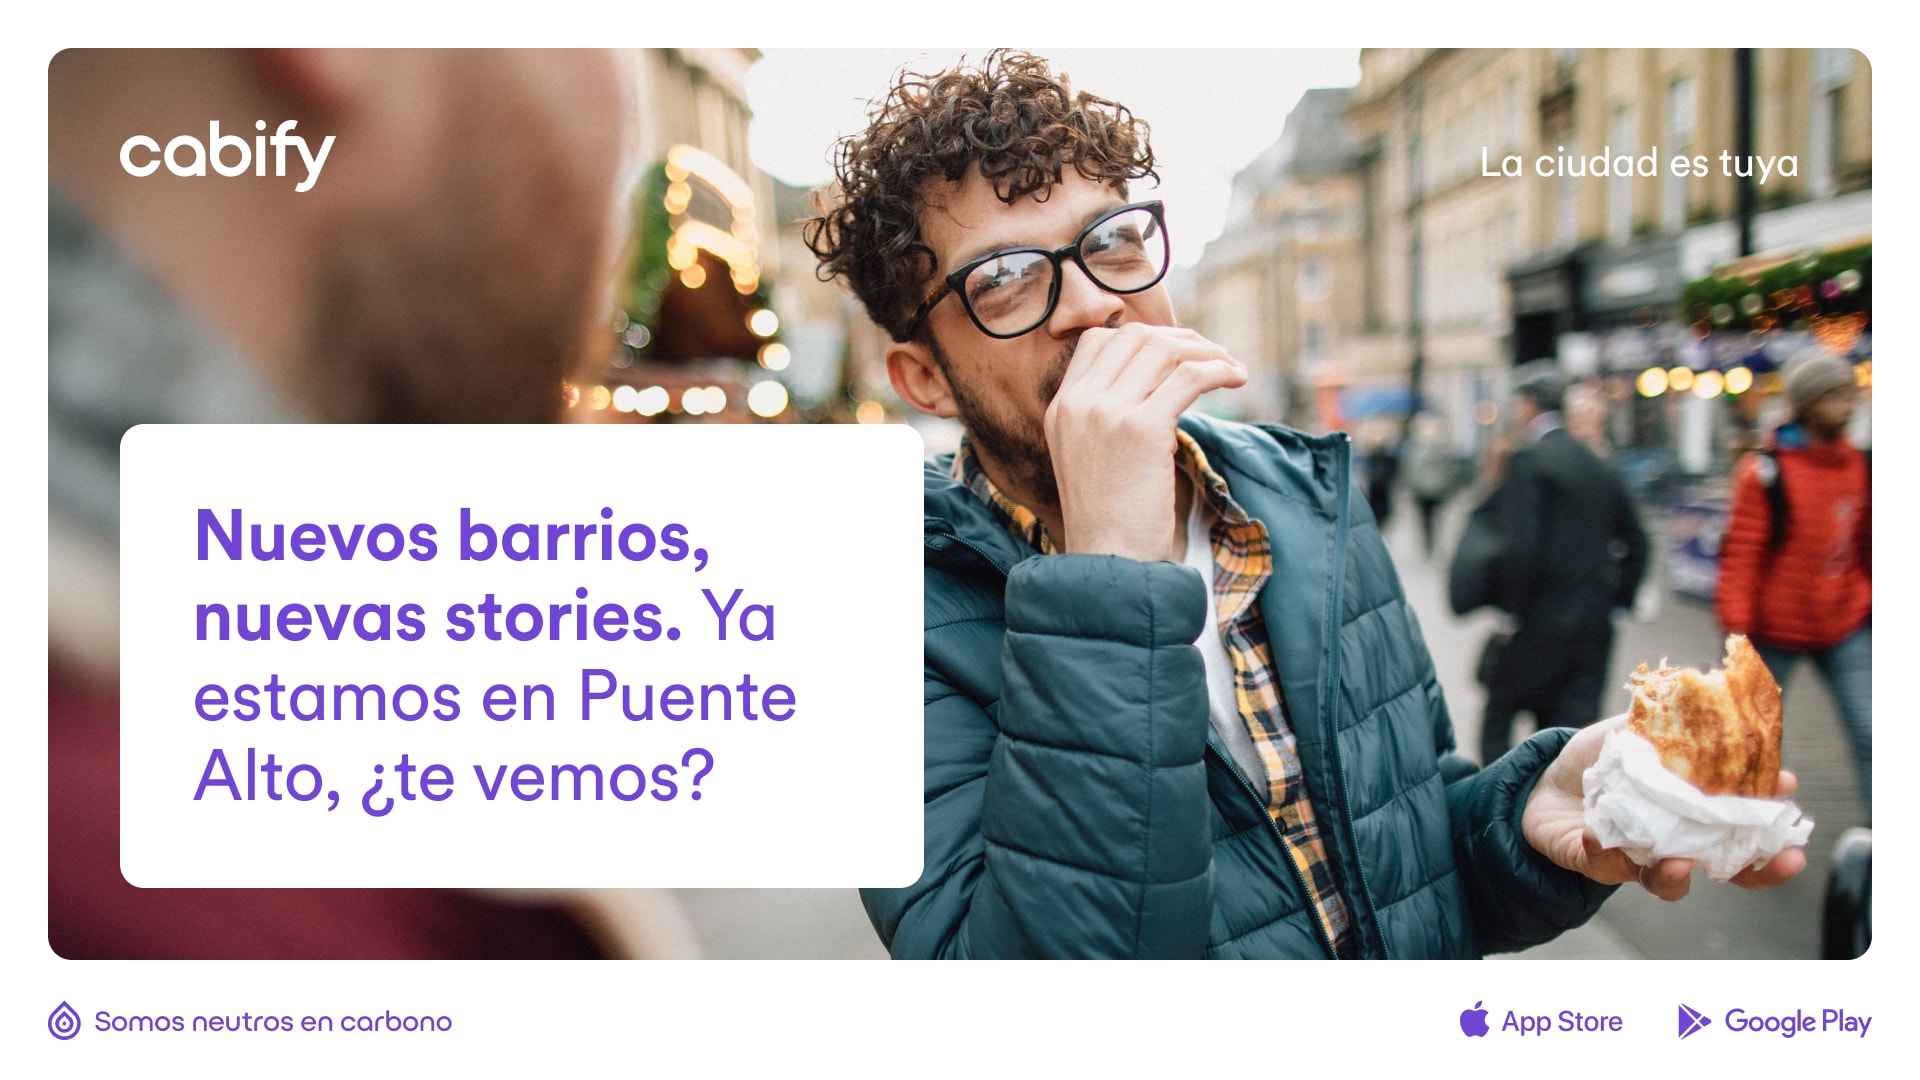 Un anuncio con el texto "Nuevos barrios, nuevas stories. ya estamos en Puente Alto, ¿te vemos? y la foto de fondo de un chico comiendo comida en la calle